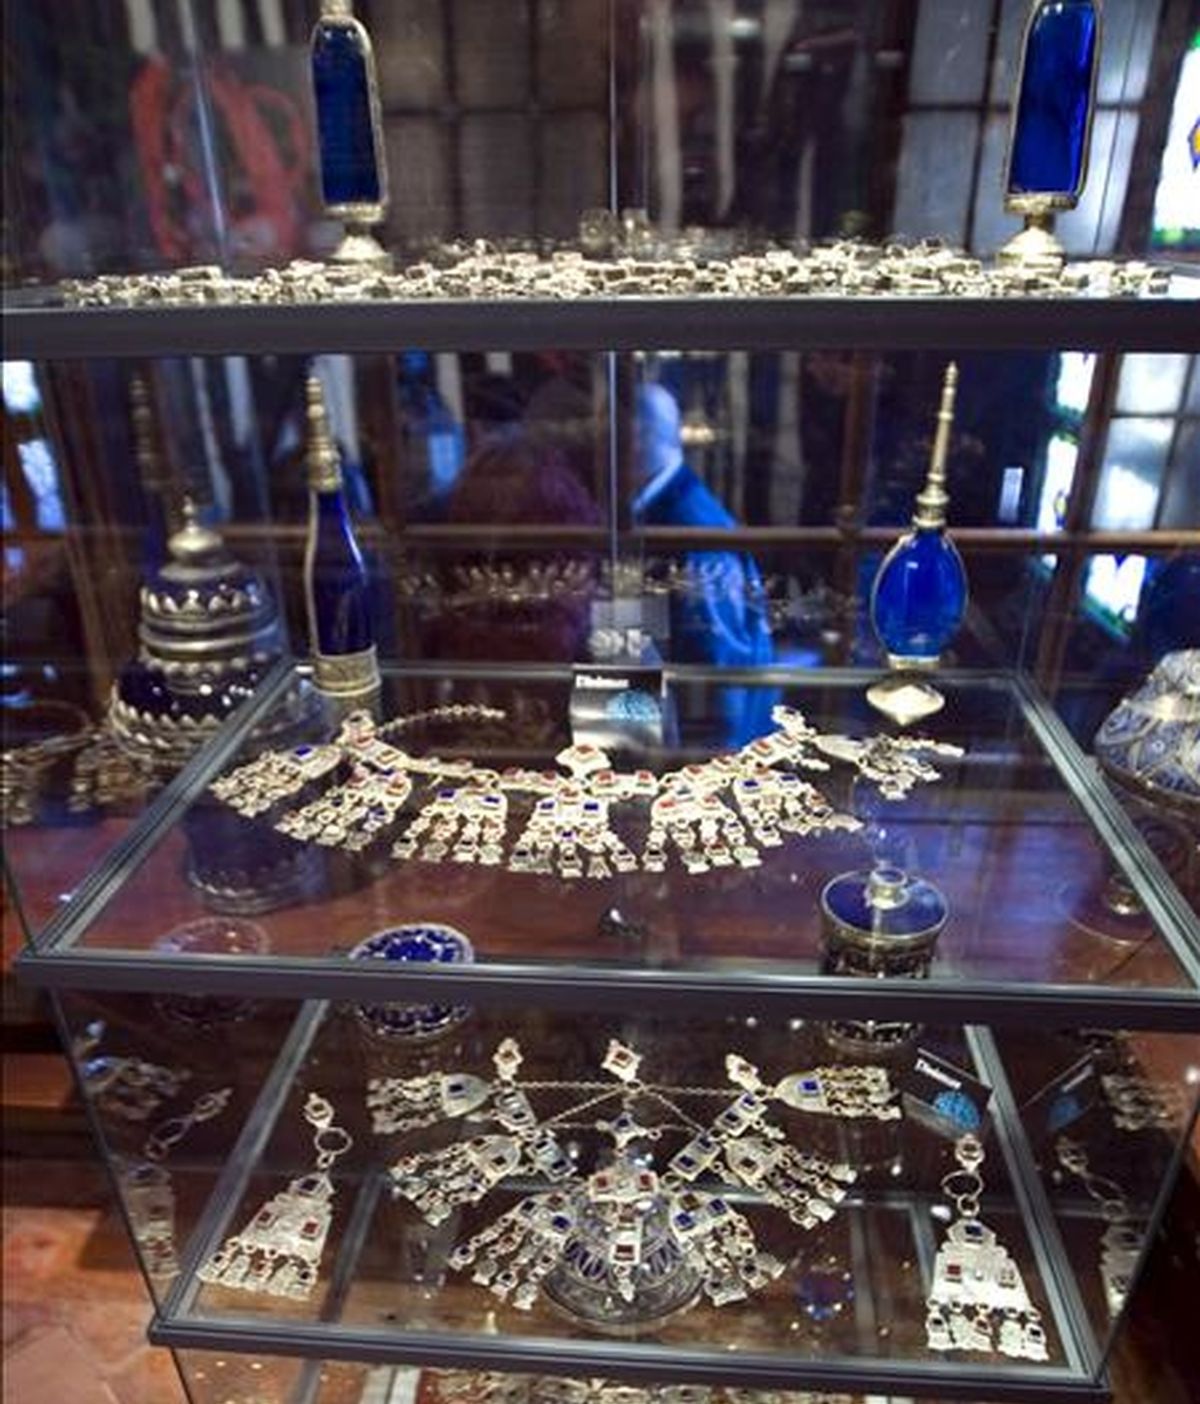 Detalle de varias de las joyas que forman parte de la exposición "Las joyas del Rif", una muestra de la multiculturalidad nacida de la convivencia entre judíos, árabes y cristianos, que se puede visitar en Vitoria. EFE